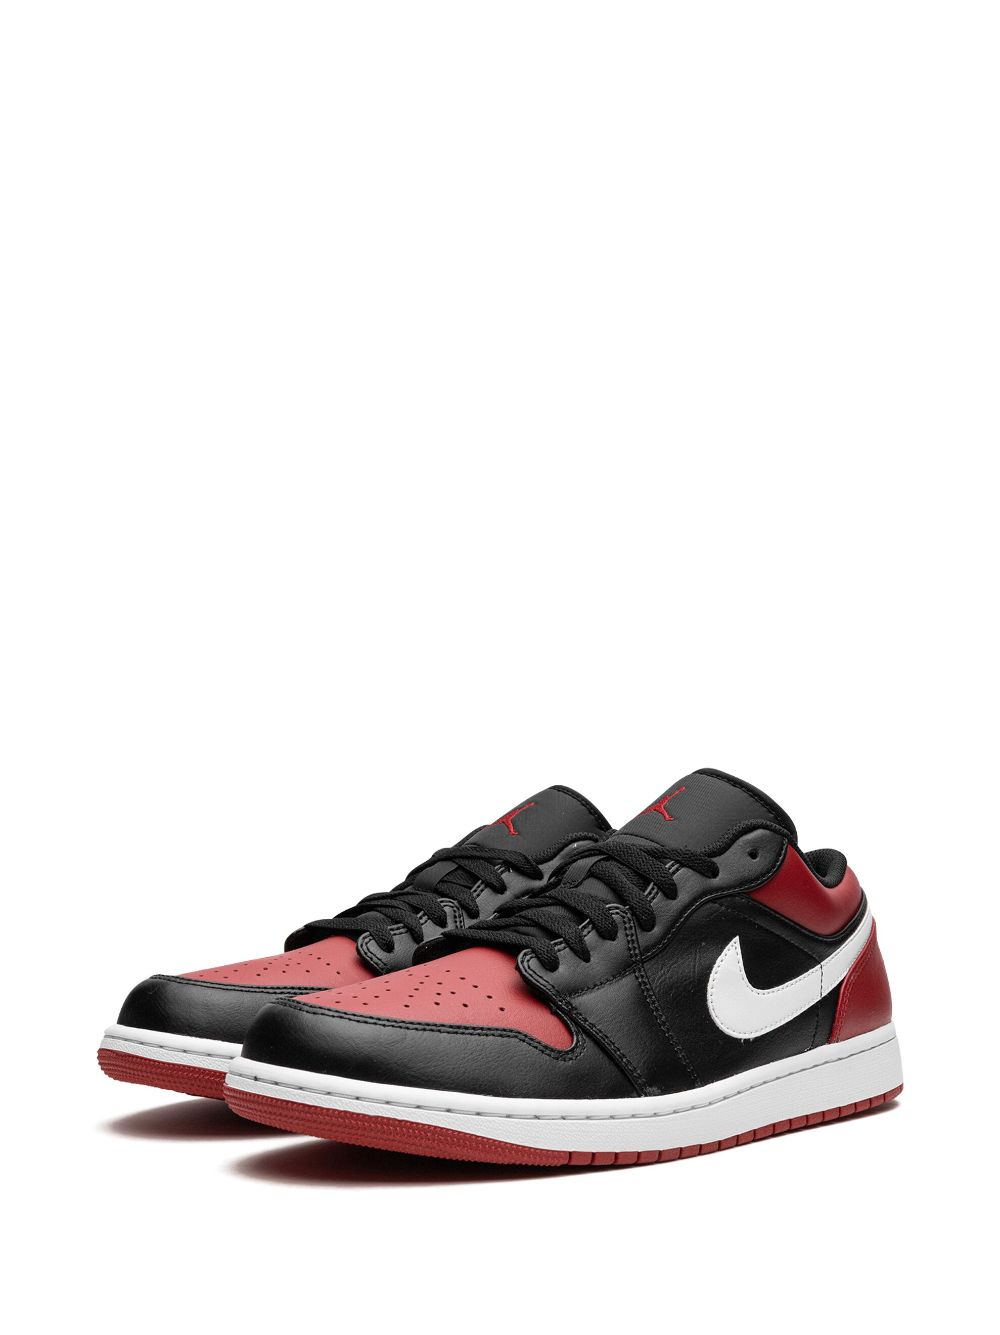 Nike Air Jordan 1 Low Bred Toe 28.5cm